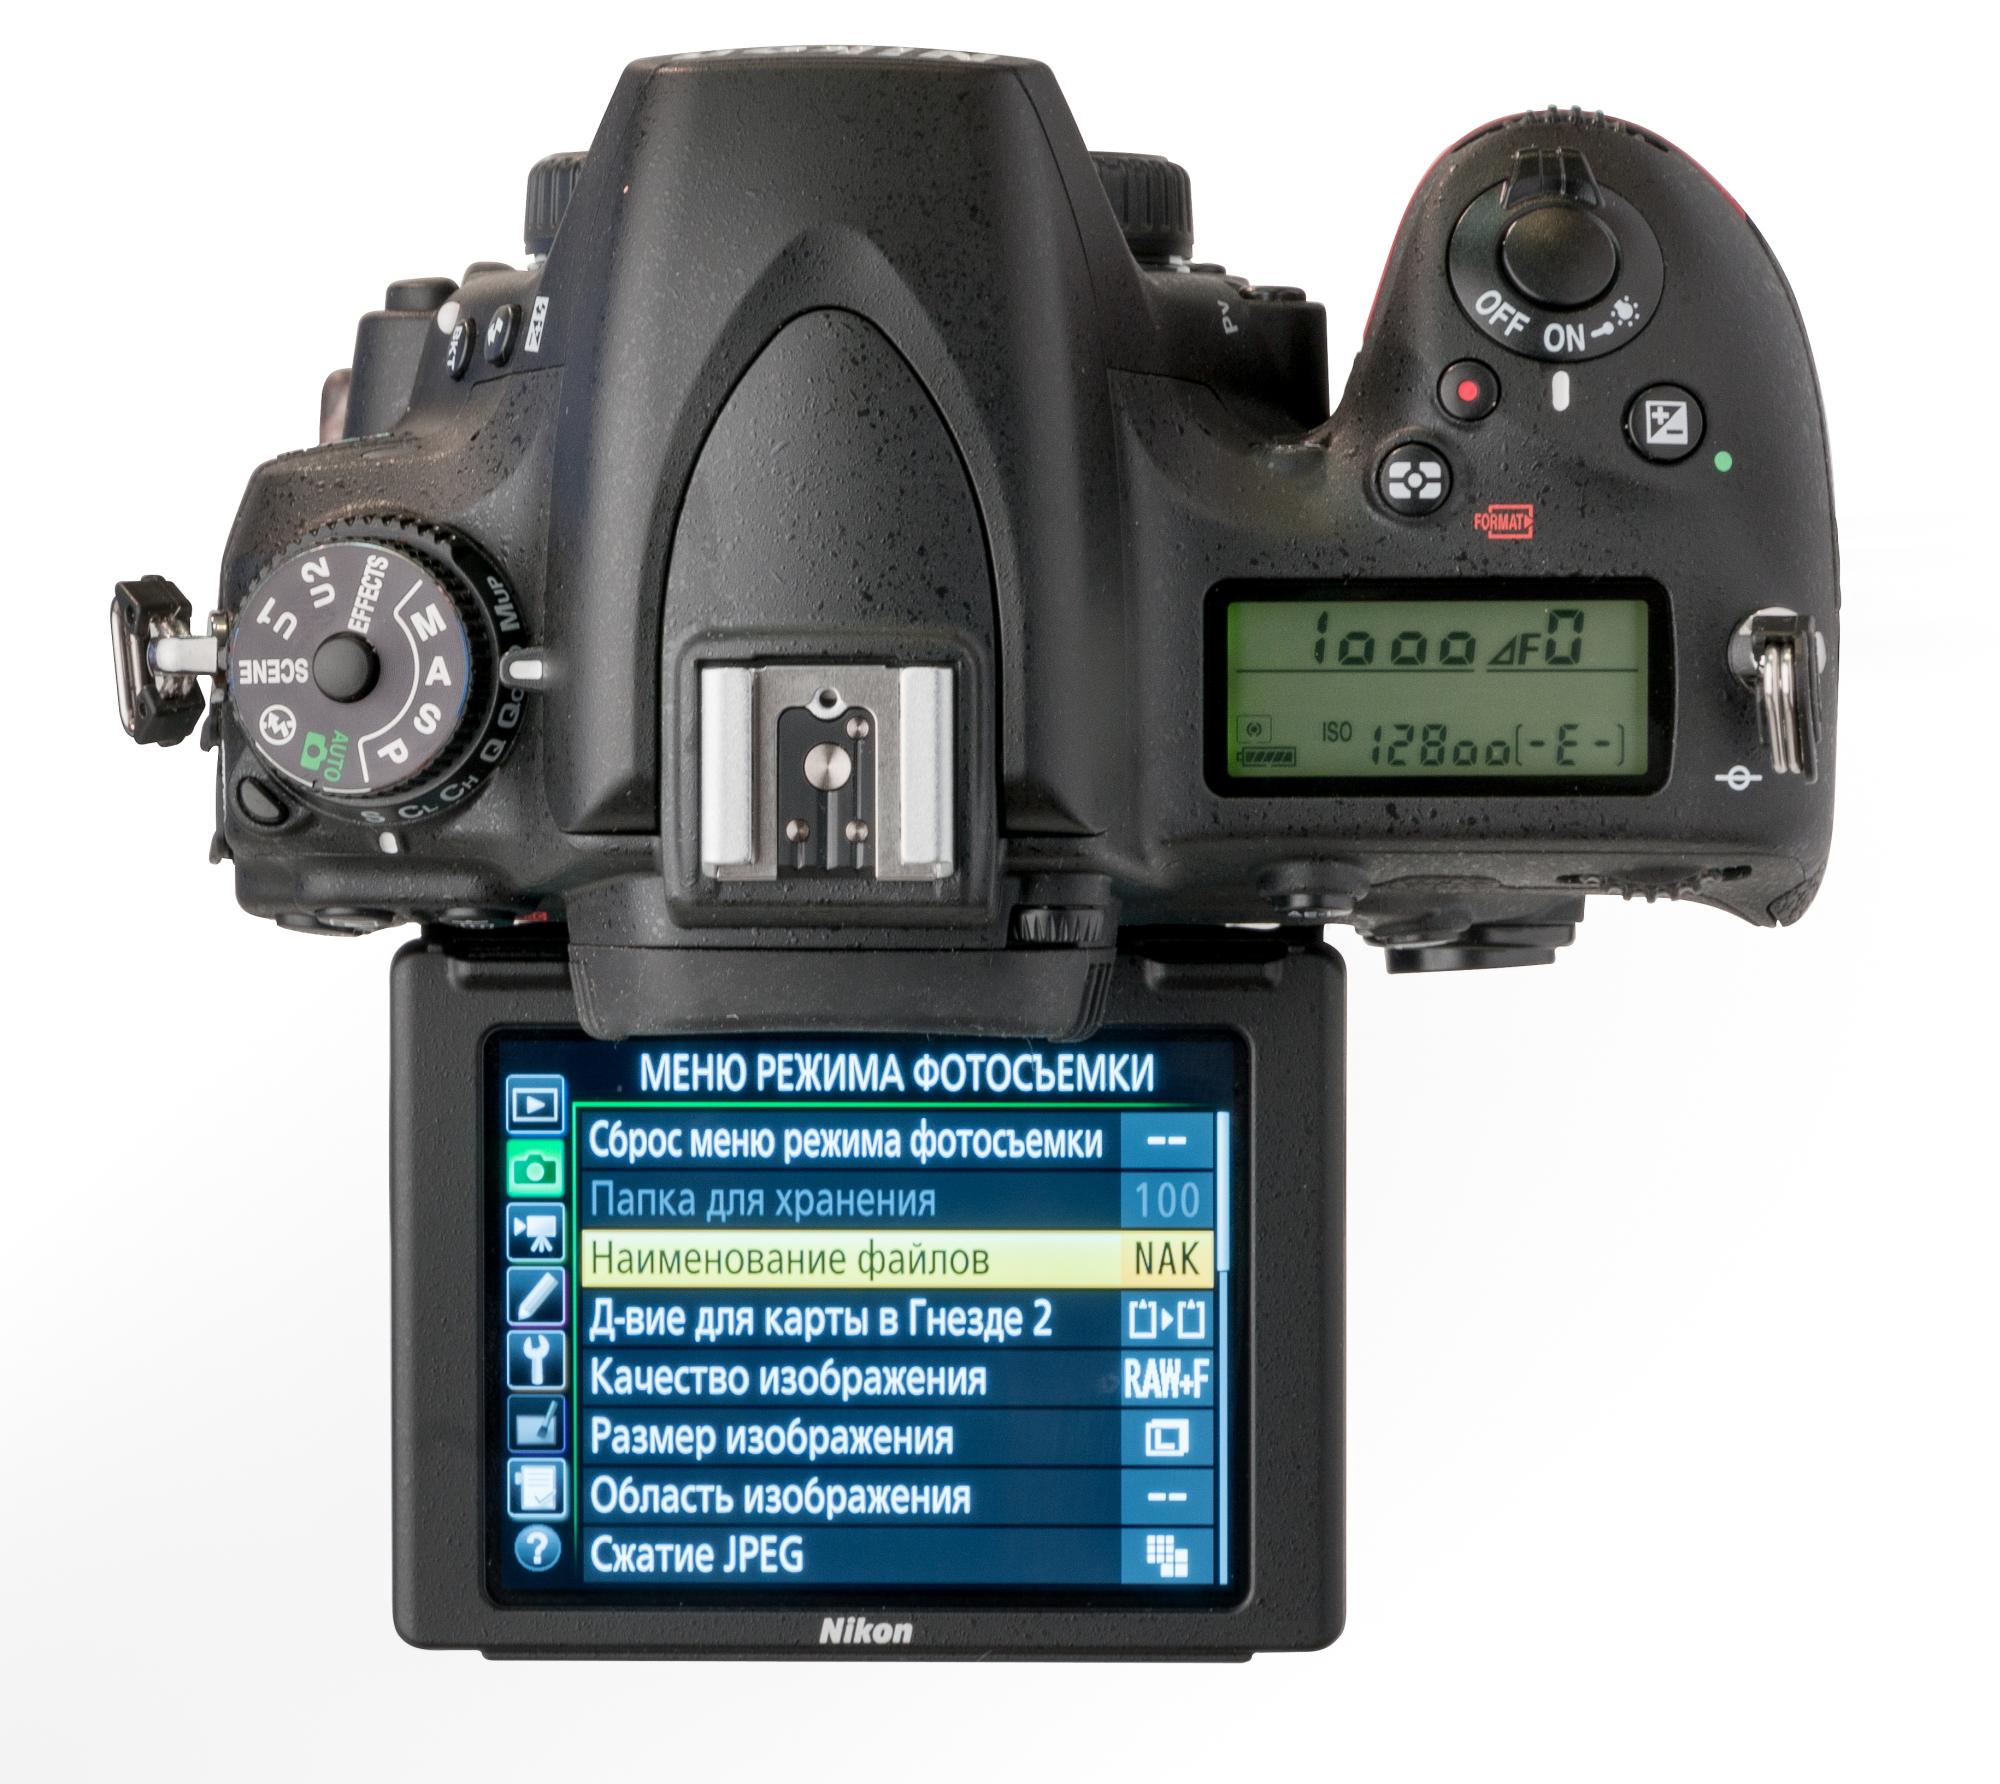 Зеркальная камера Nikon D750 - развернутый дисплей